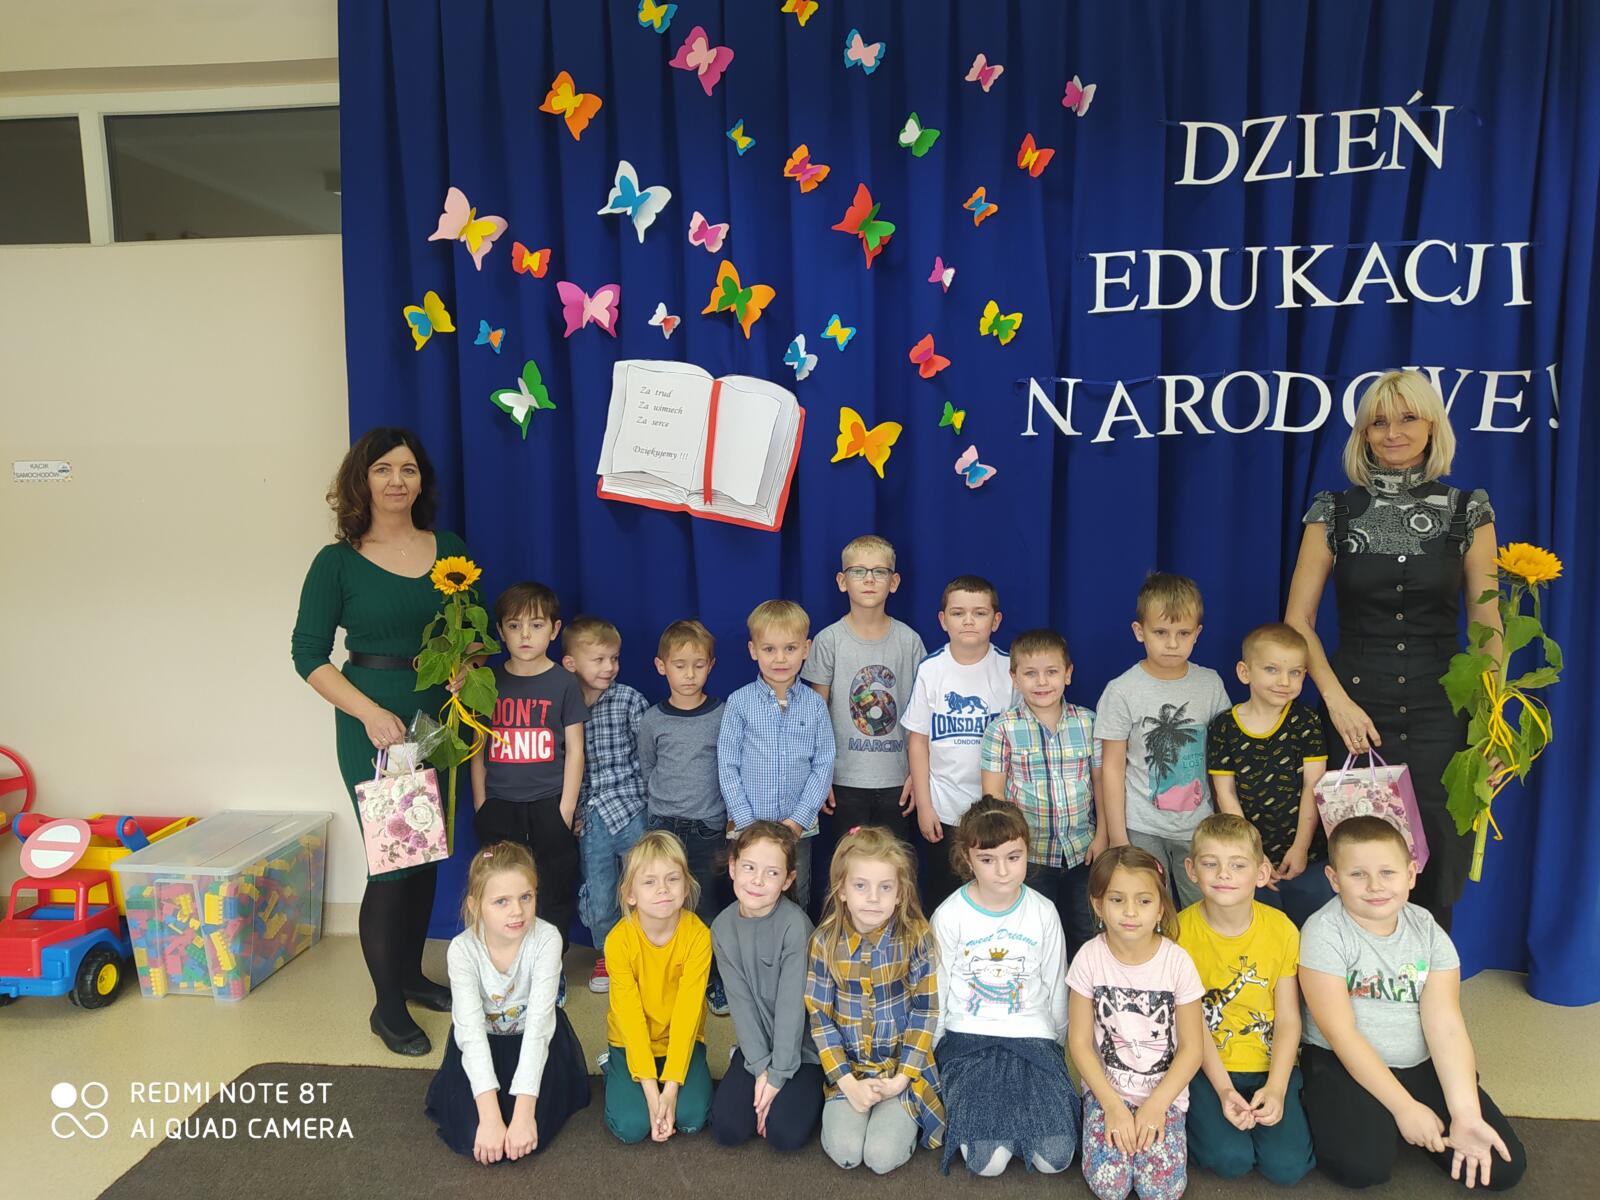 Grupa Reniferki wraz z paniami na tle dekoracji z napisem Dzień Edukacji Narodowej